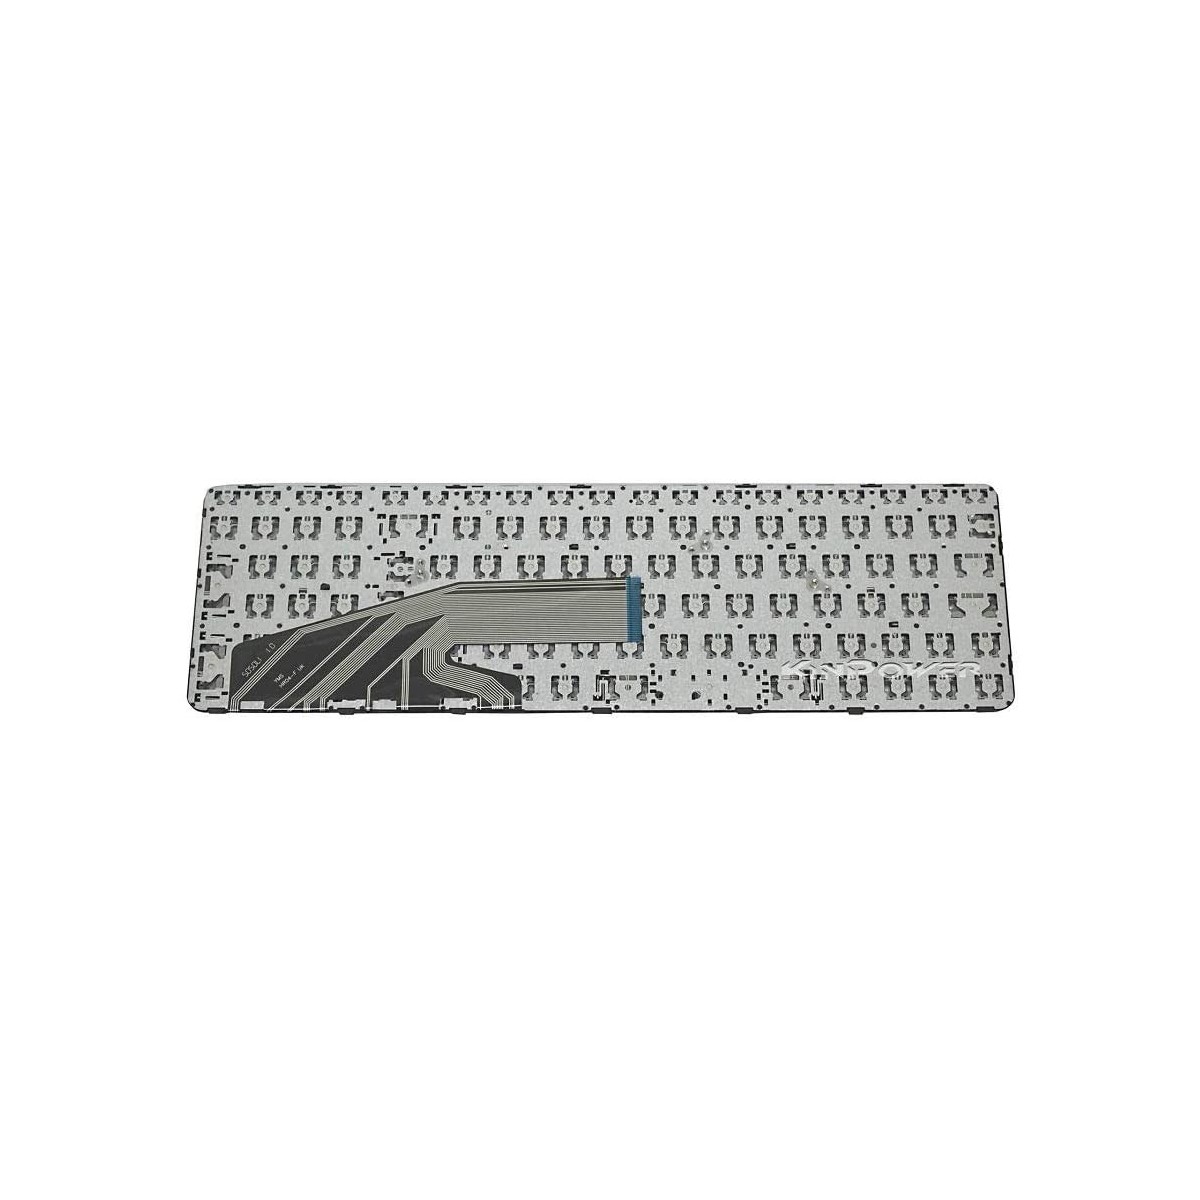 Clavier Français compatible Pour HP ProBook 450 G4 SERIES AEX63U00110